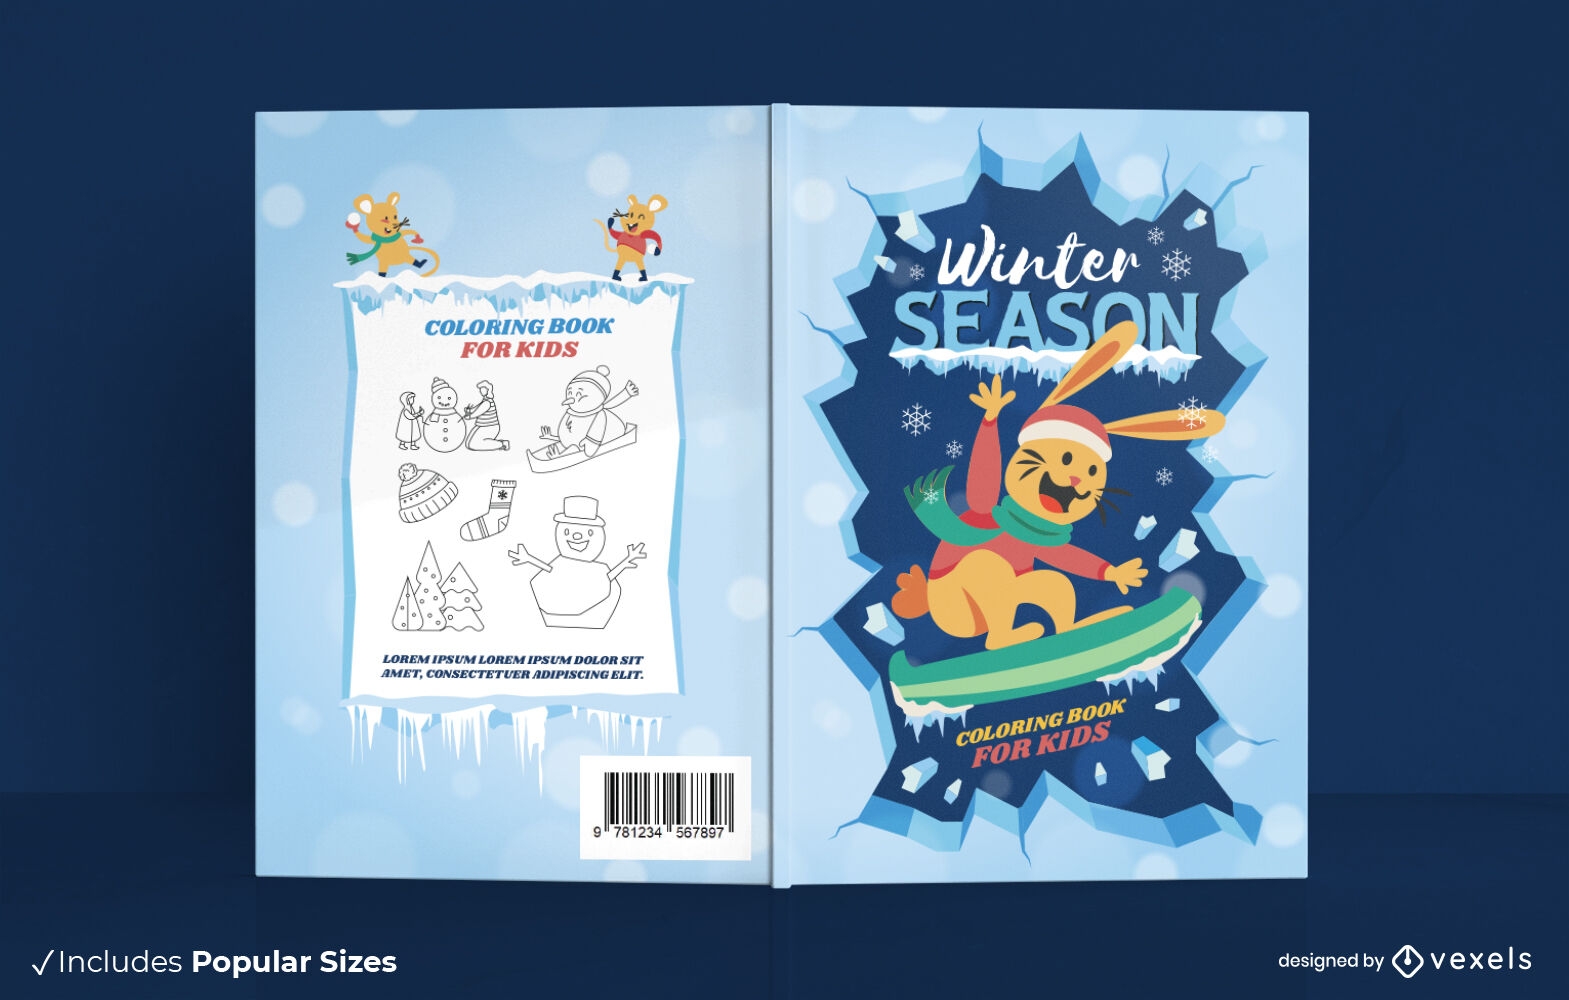 Winter season snowboard Book cover design